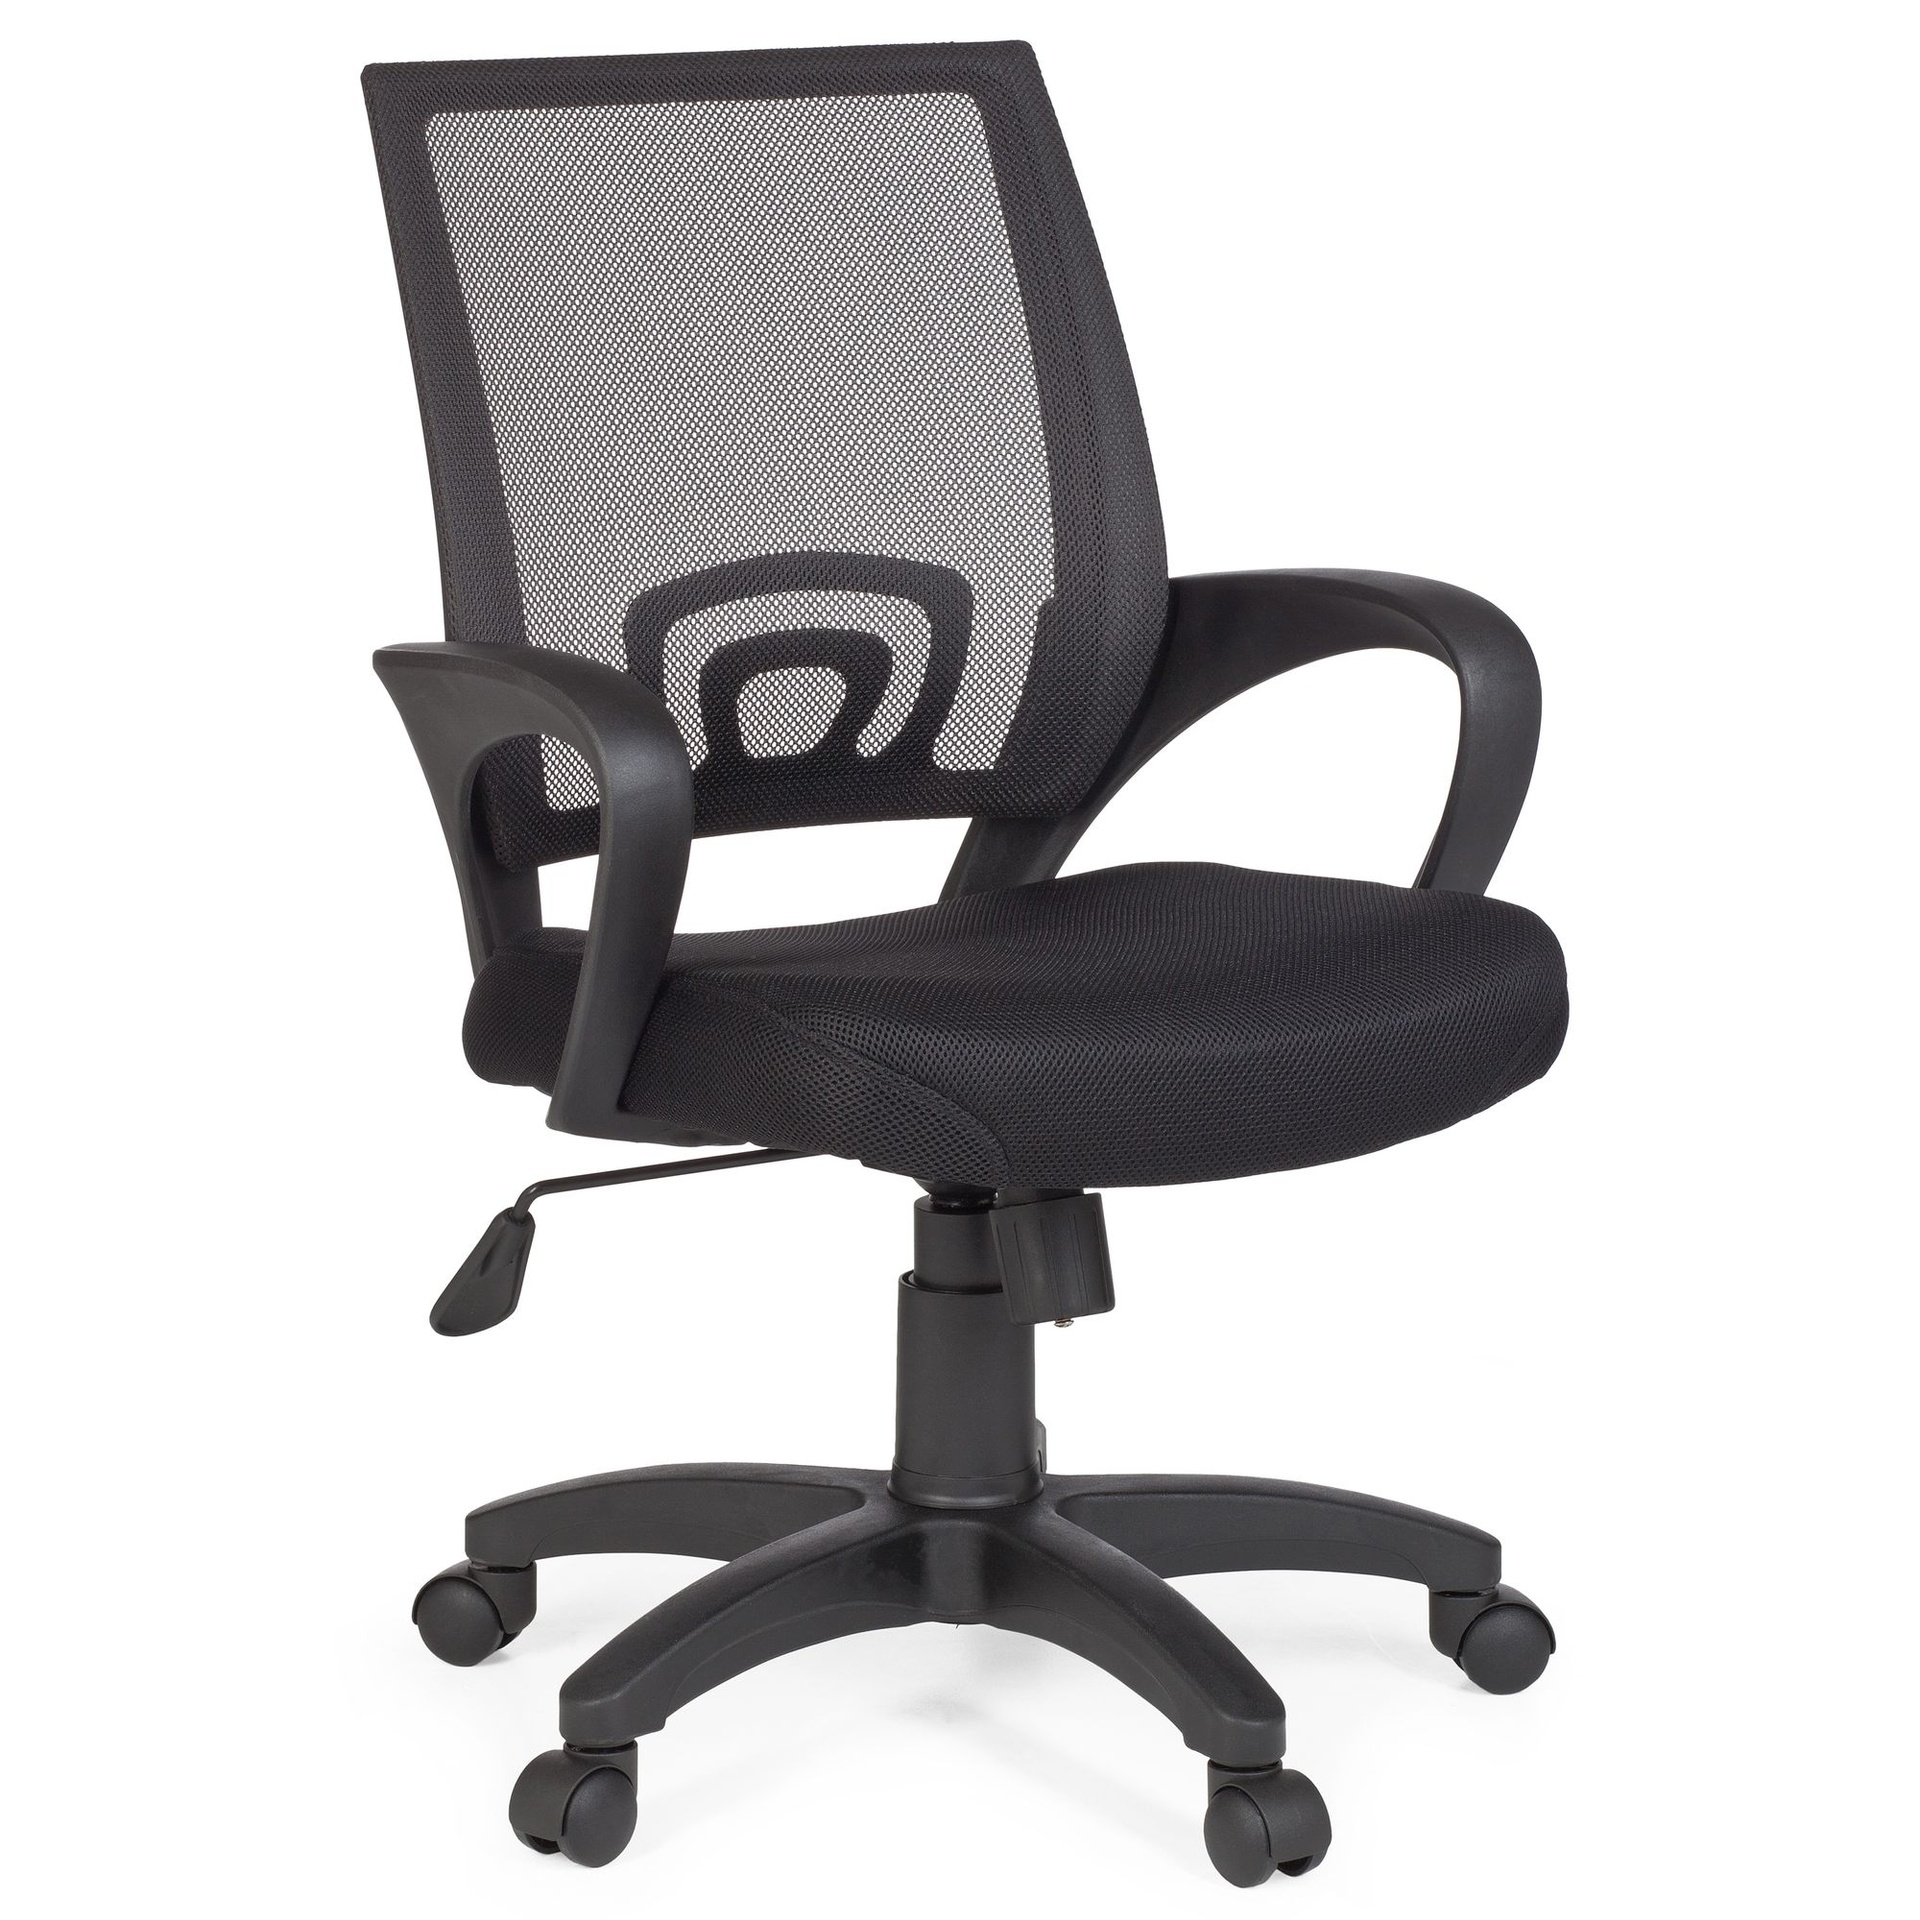 [A09420] Chaise de bureau Rivoli Chaise de bureau noire avec accoudoirs